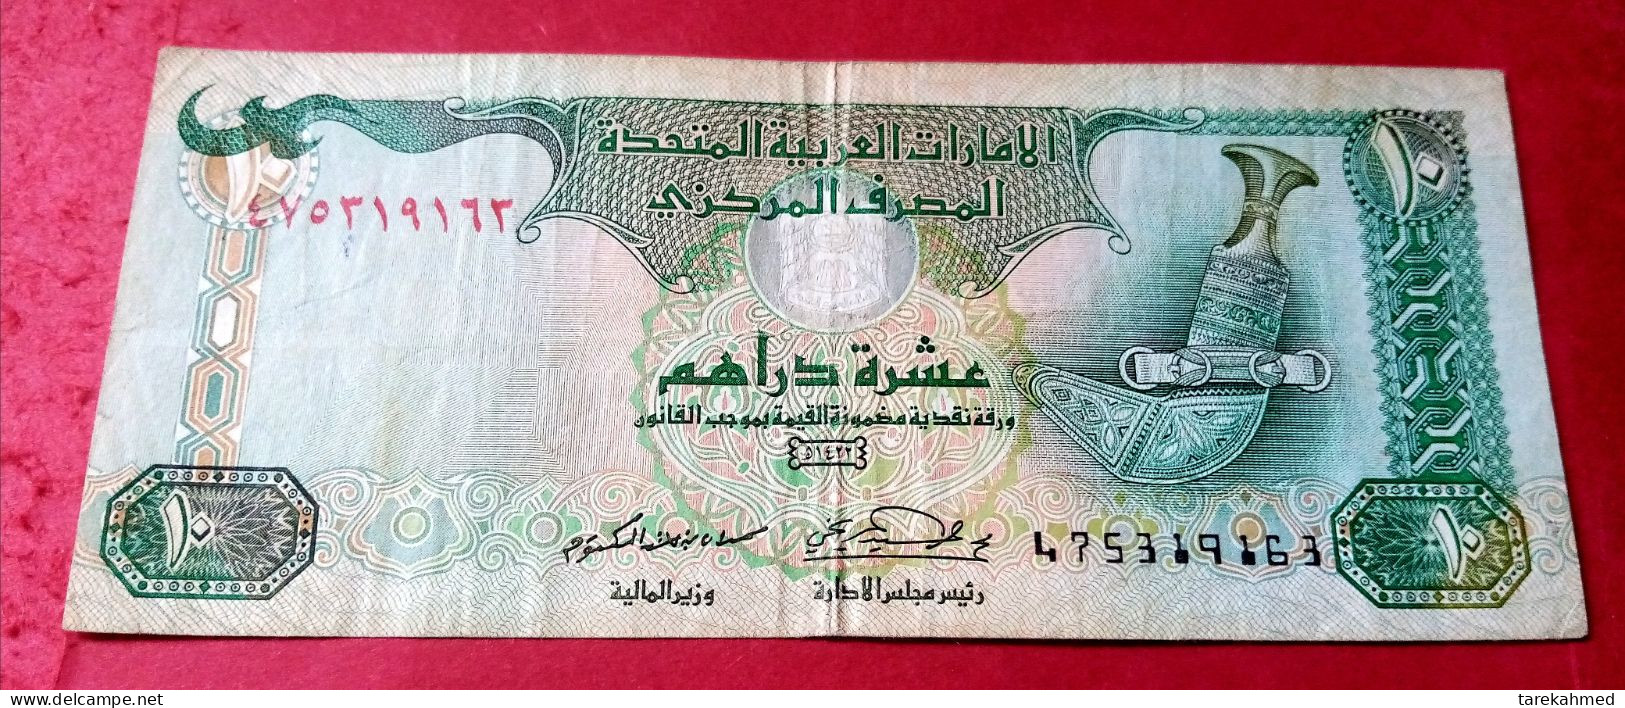 Emirates United Arab, 10 Dirham, 2001, Pick 20b , XF - Ver. Arab. Emirate